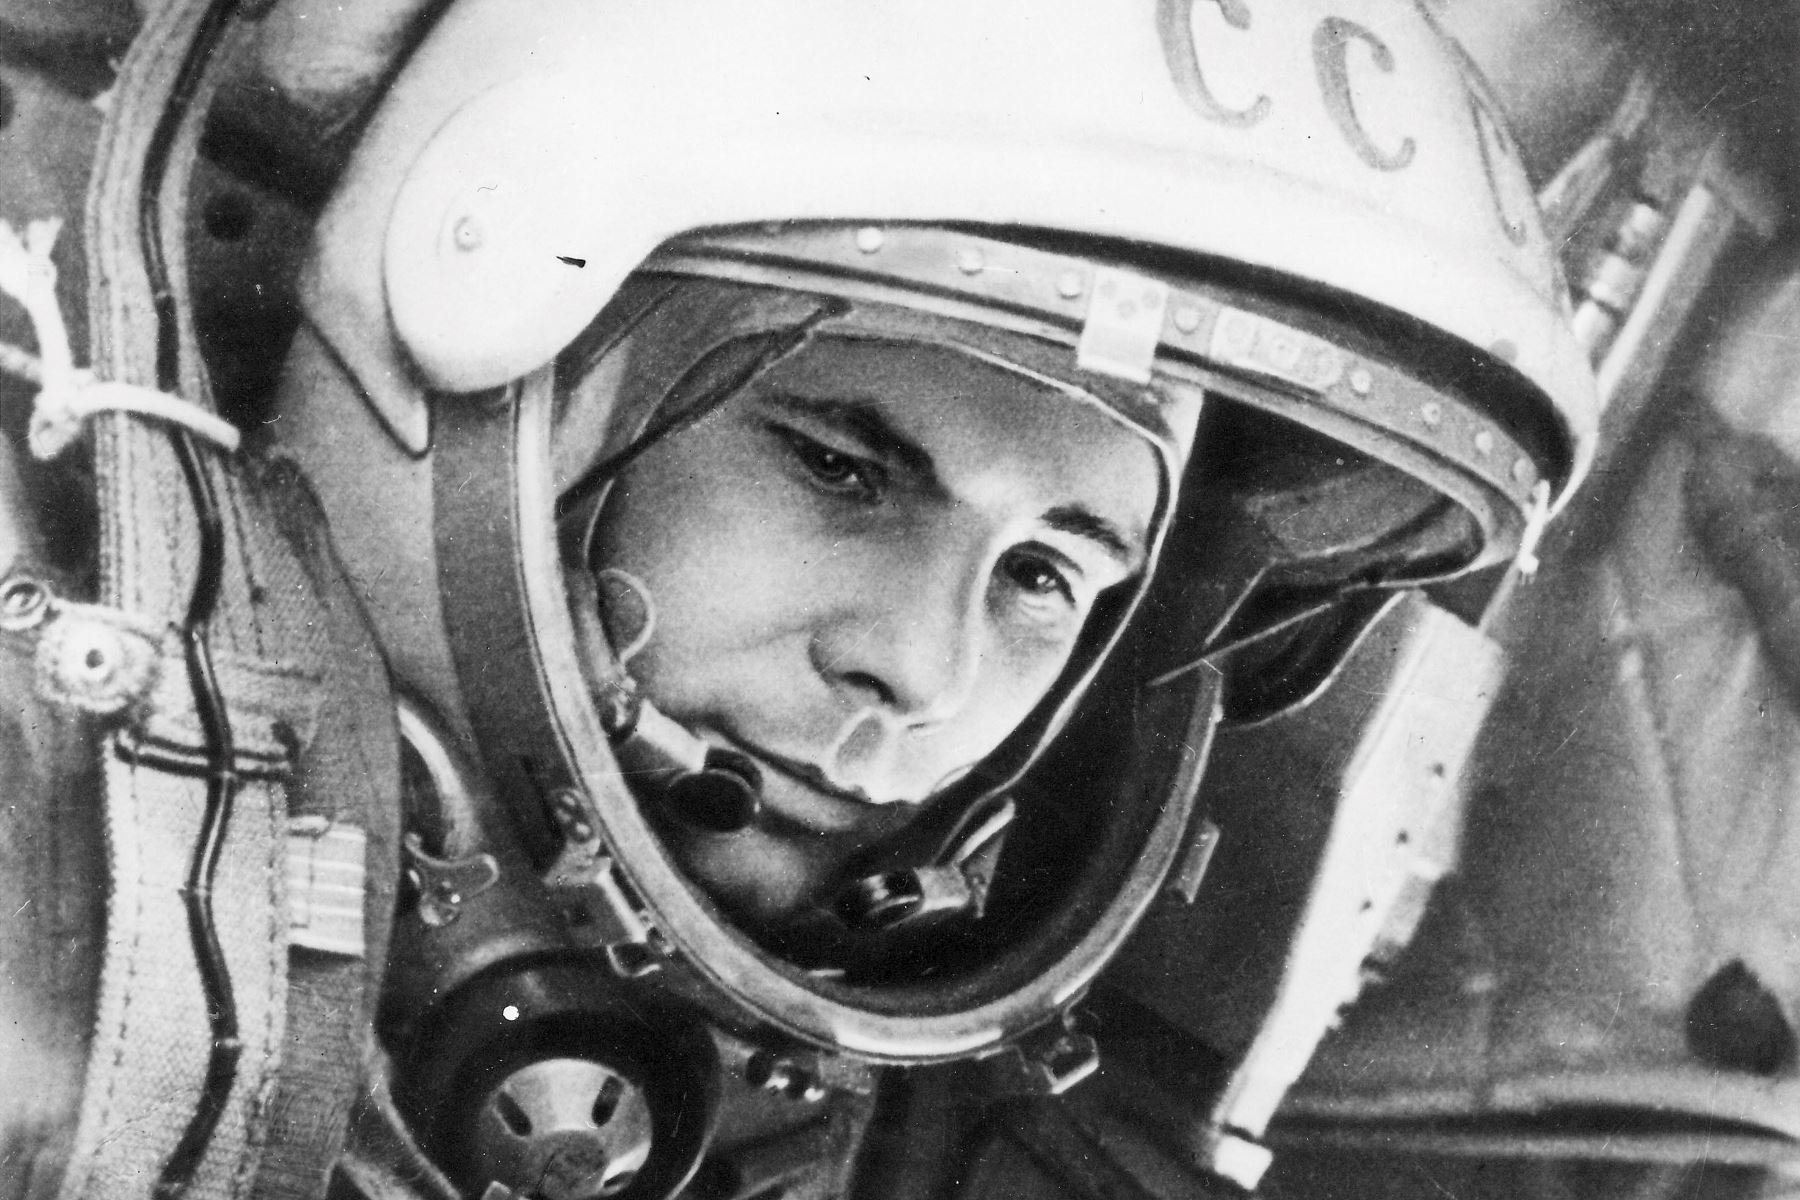 El propio Gagarin, consciente del riesgo que corría, escribió una carta a su esposa en la que le daba permiso para volver a casarse, aunque también dejó plasmado en su testamento: "Creo totalmente en la técnica. No debe fallar". Foto: EFE